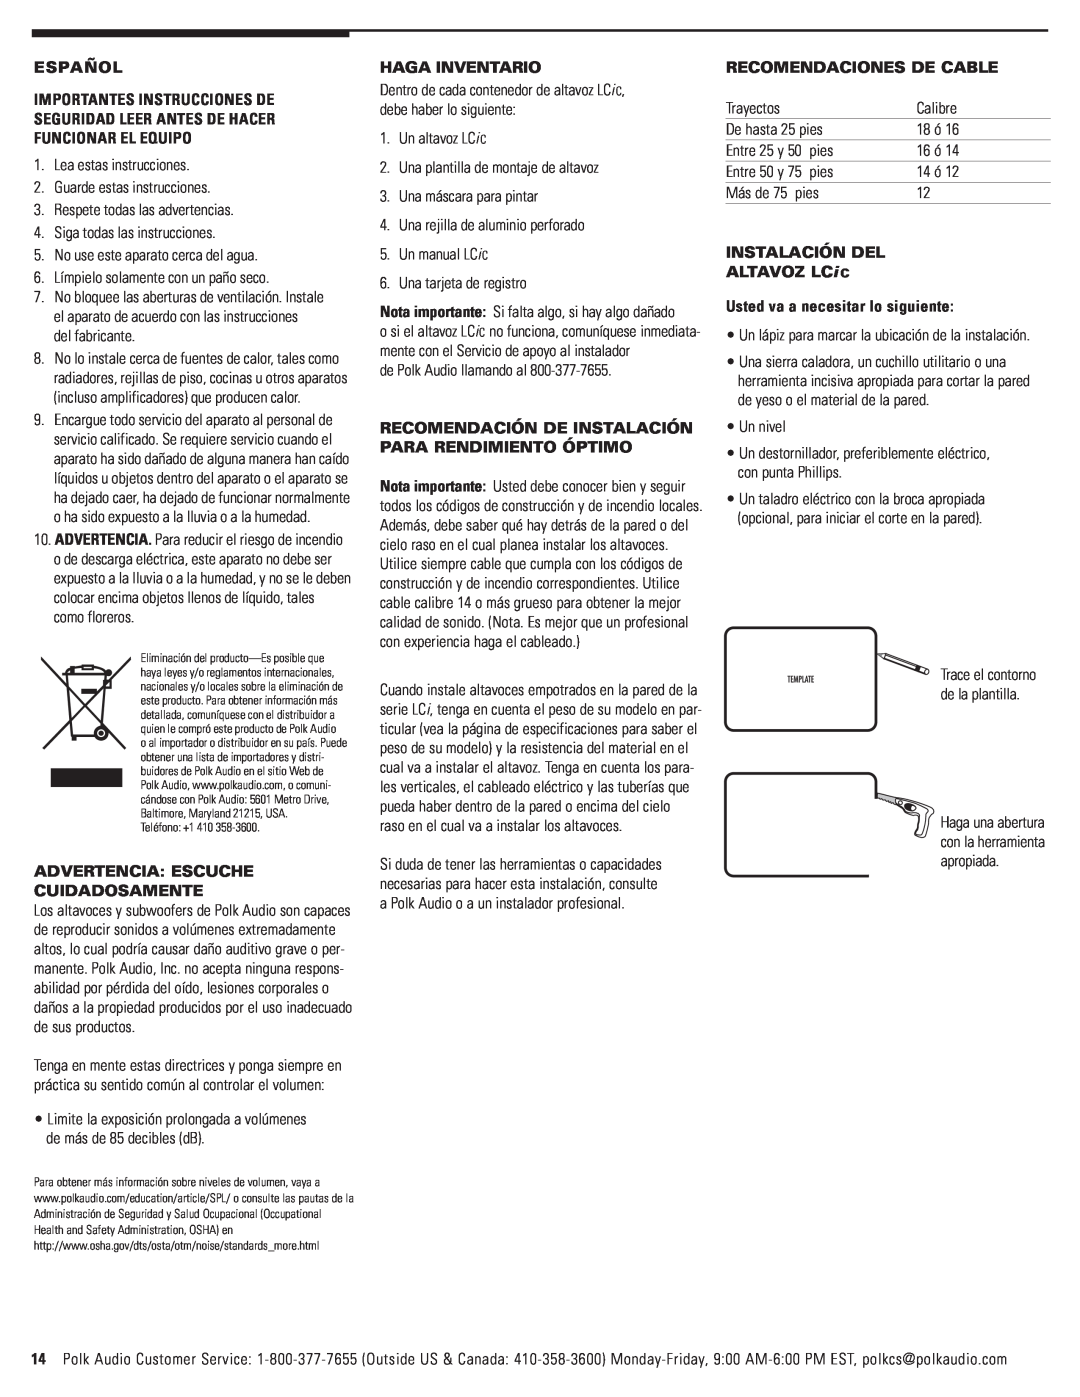 Polk Audio LCi-C owner manual Español, Advertencia Escuche Cuidadosamente, Haga Inventario, Recomendaciones De Cable 